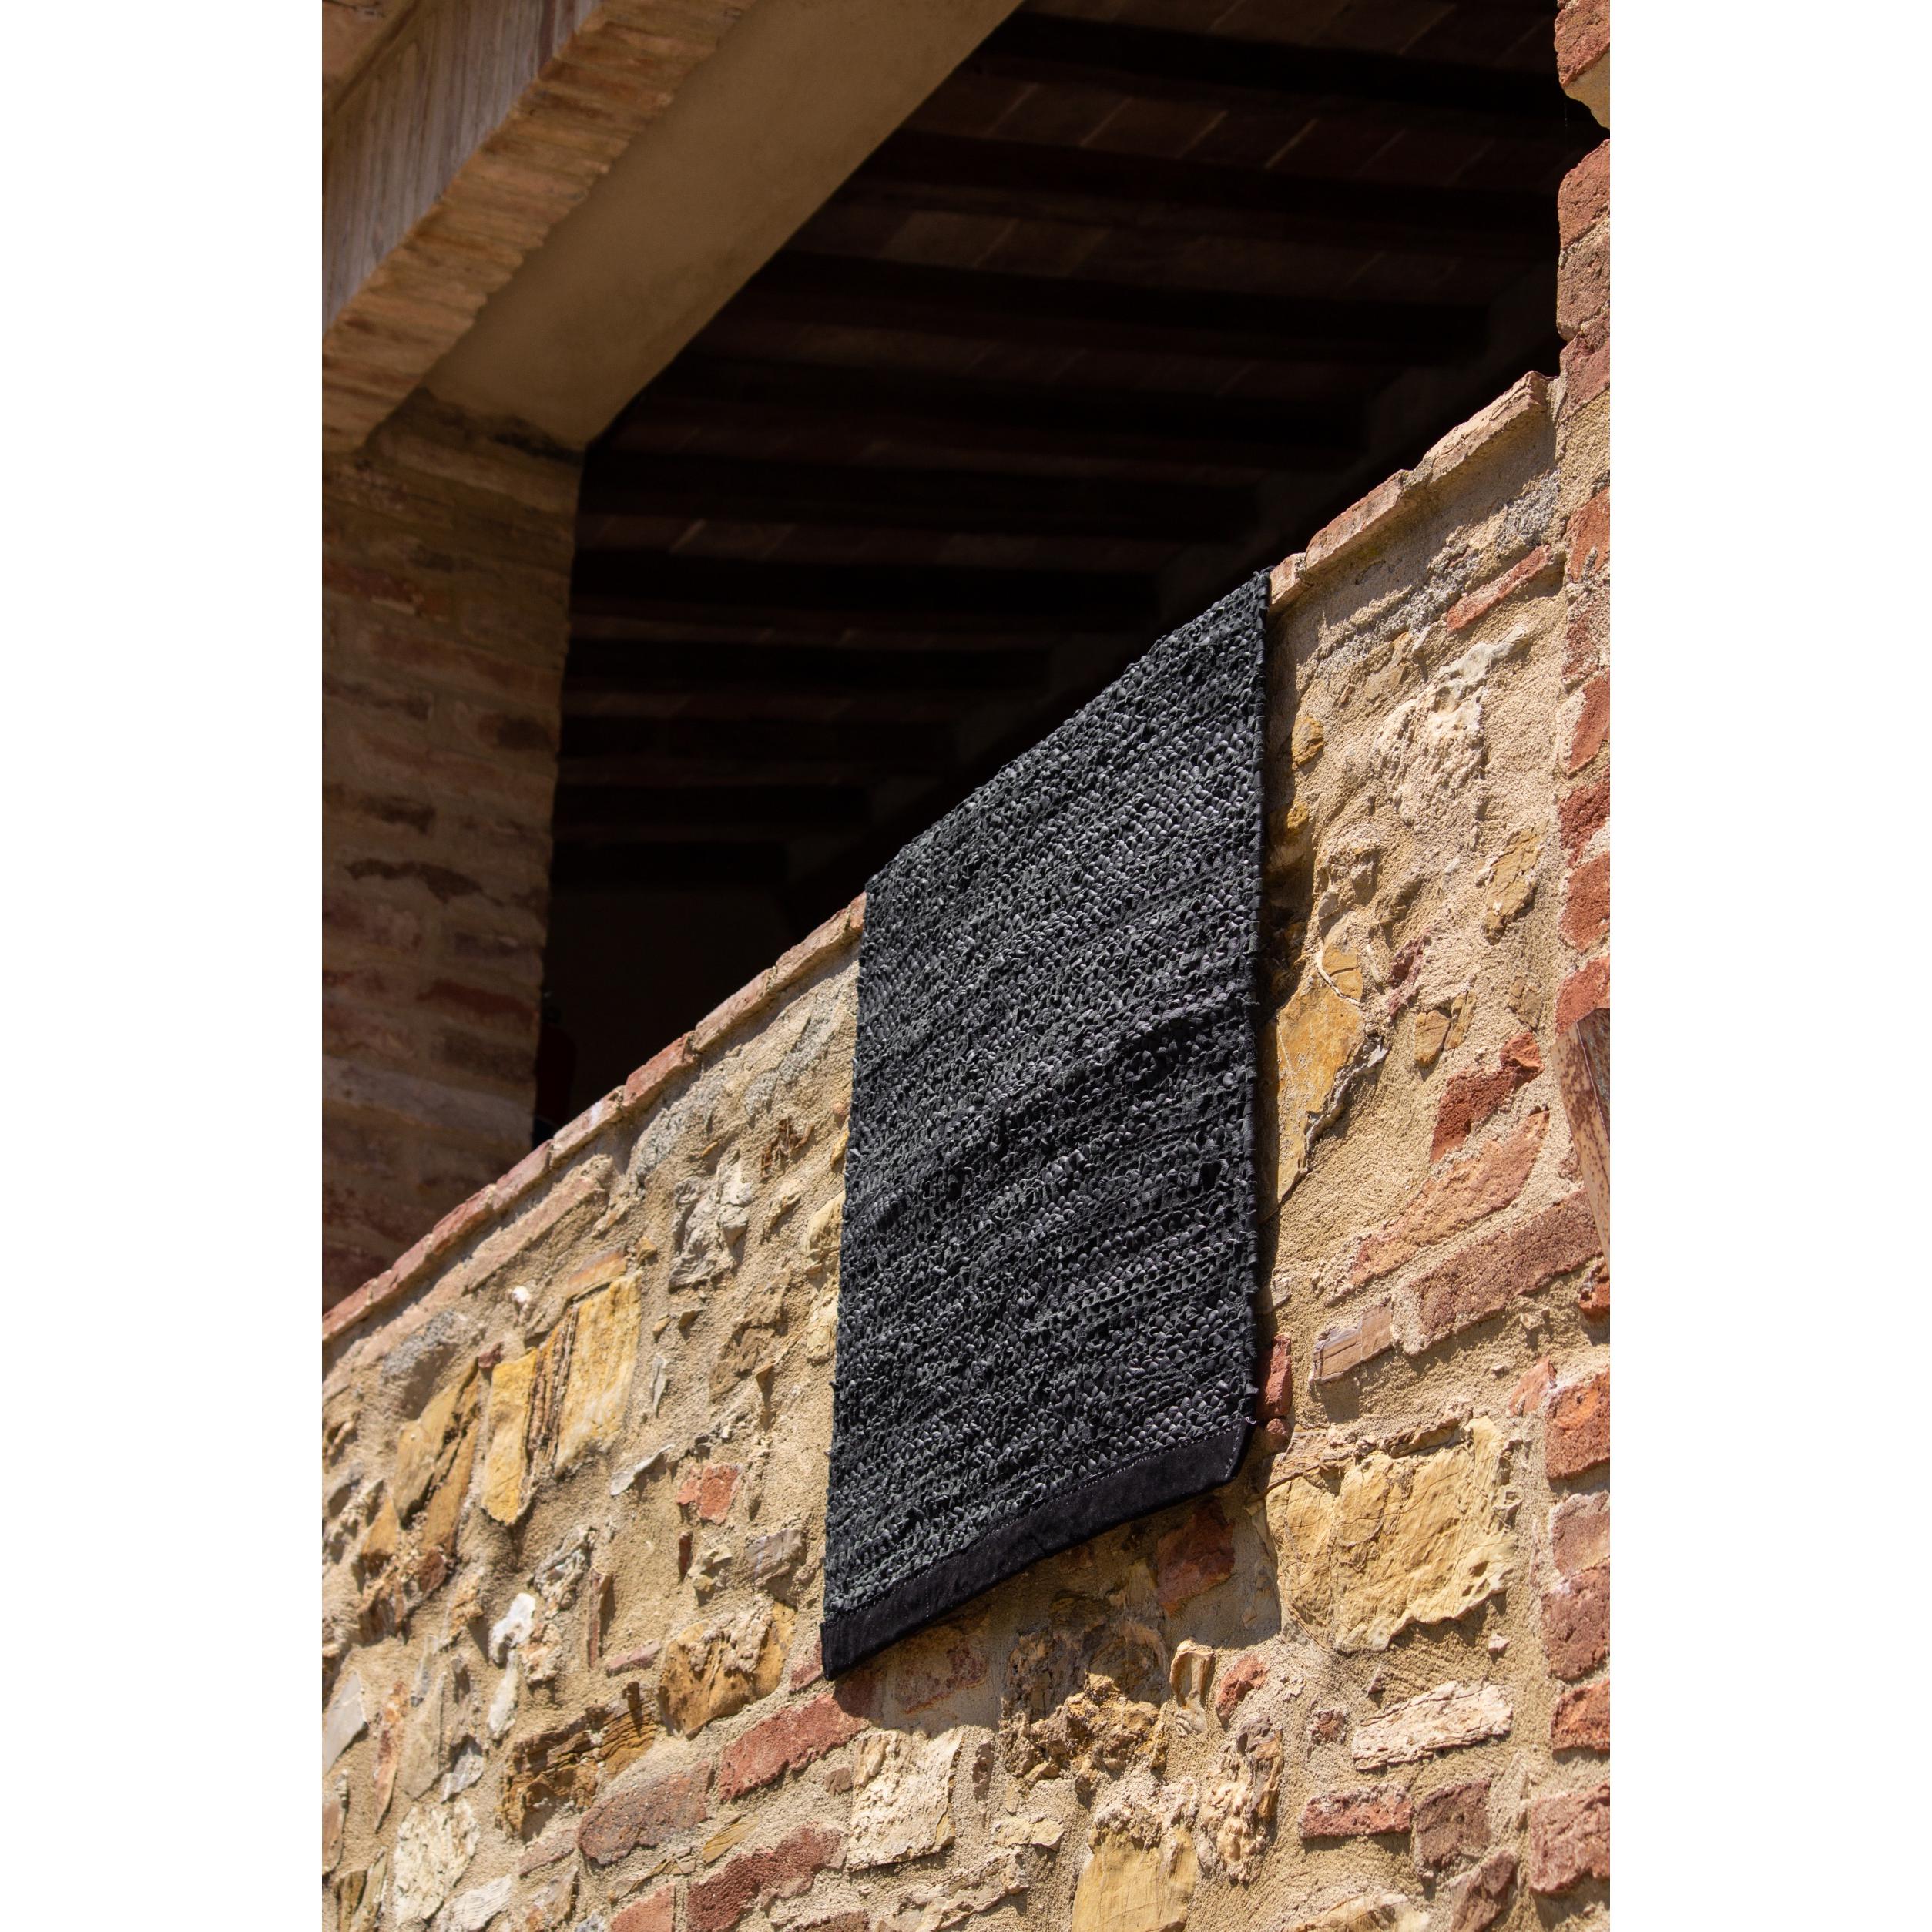 Rug Solid Leather Tæppe Black, 65 x 135 cm